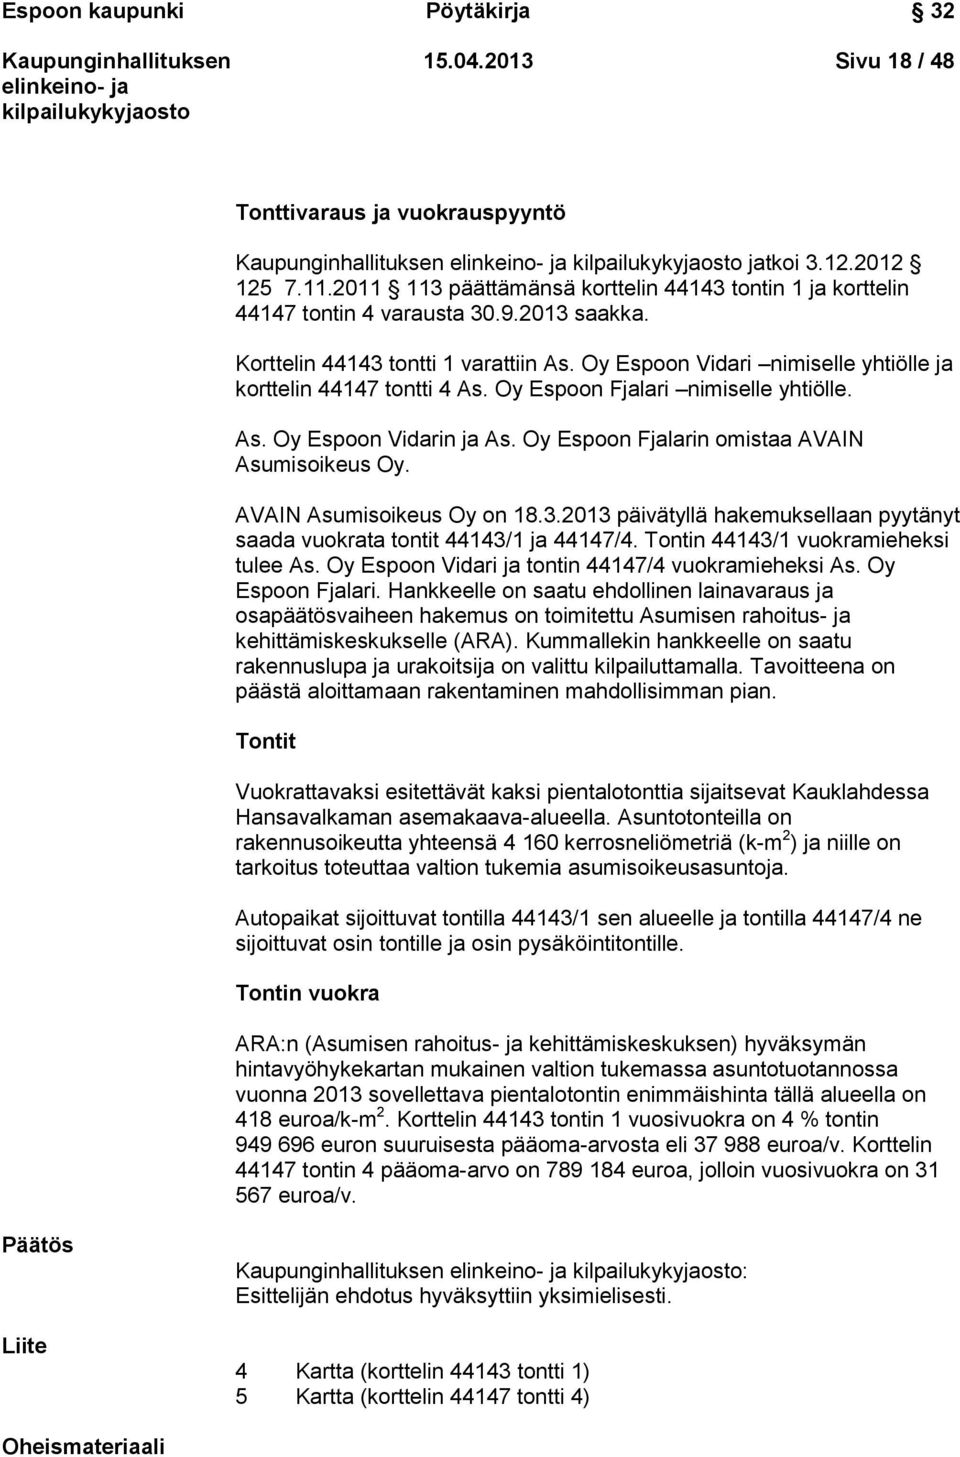 Oy Espoon Fjalarin omistaa AVAIN Asumisoikeus Oy. AVAIN Asumisoikeus Oy on 18.3.2013 päivätyllä hakemuksellaan pyytänyt saada vuokrata tontit 44143/1 ja 44147/4.